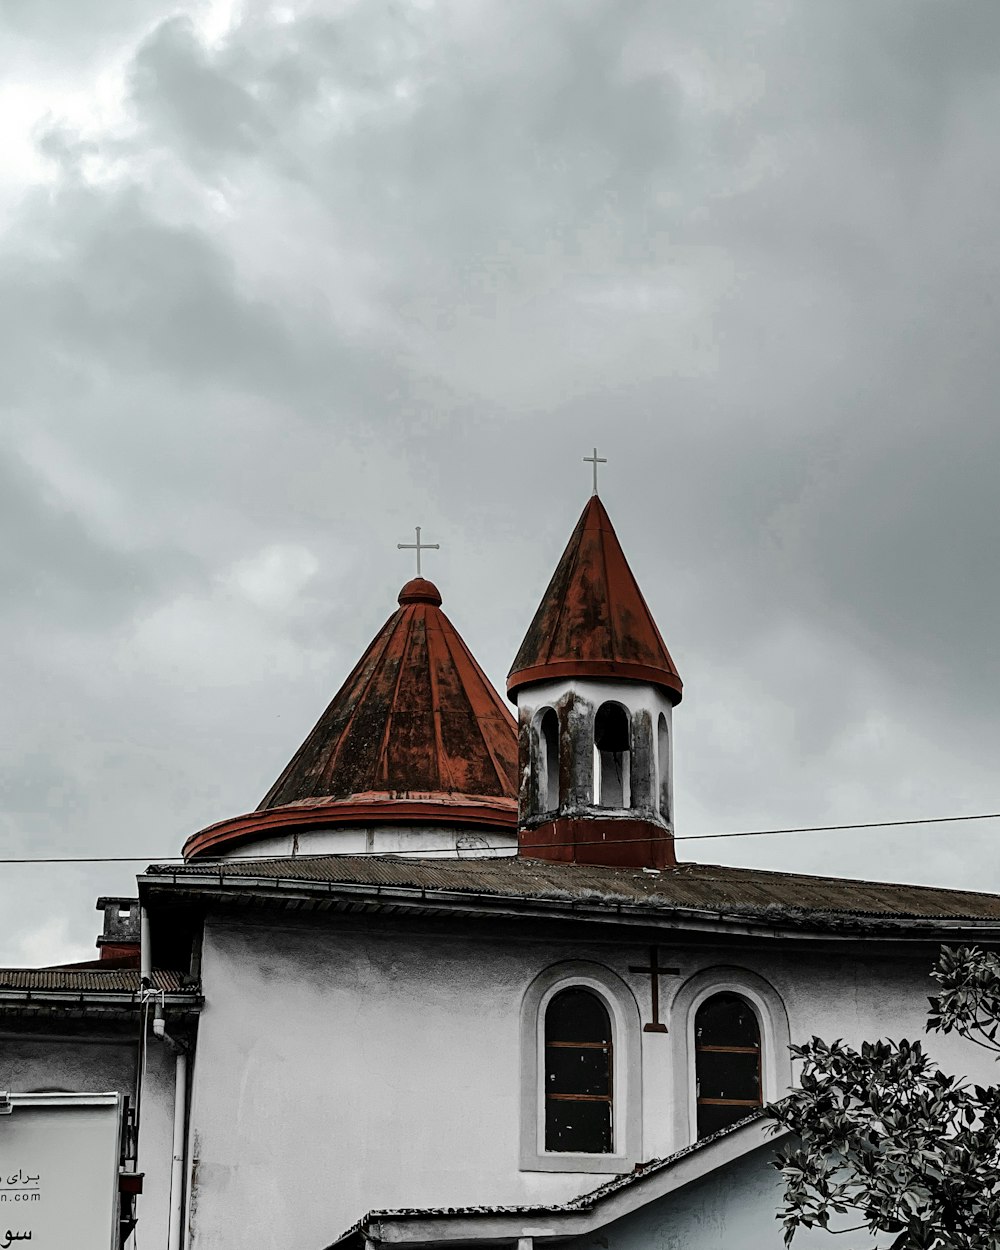 赤い屋根と時計台のある白い建物